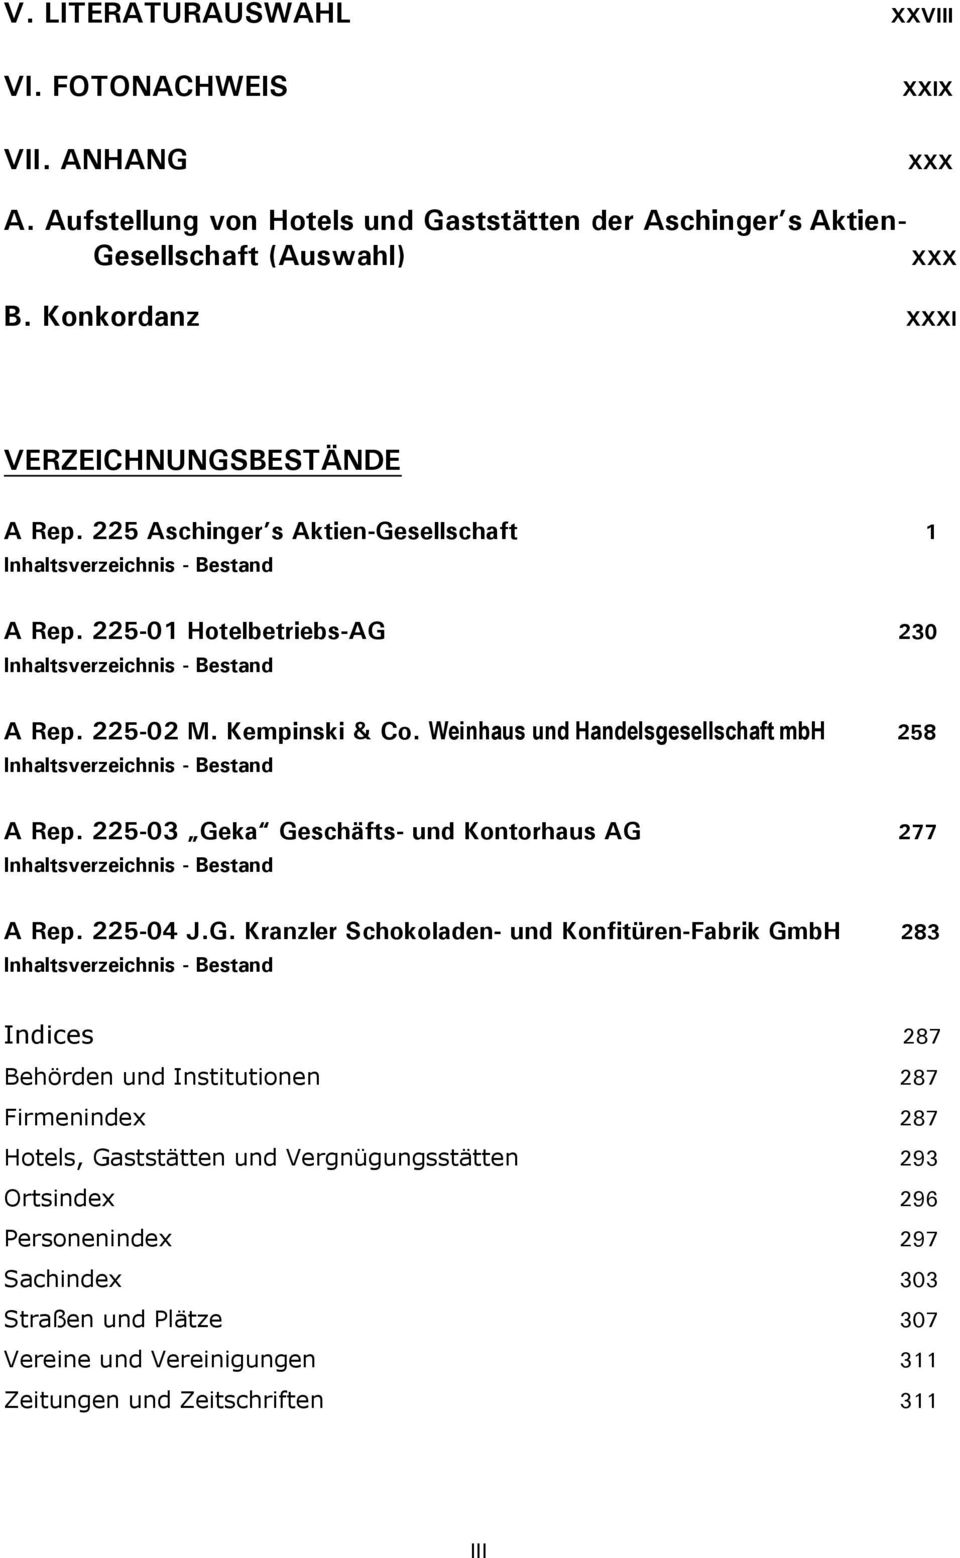 Kempinski & Co. Weinhaus und Handelsgesellschaft mbh 258 Inhaltsverzeichnis - Bestand A Rep. 225-03 Ge